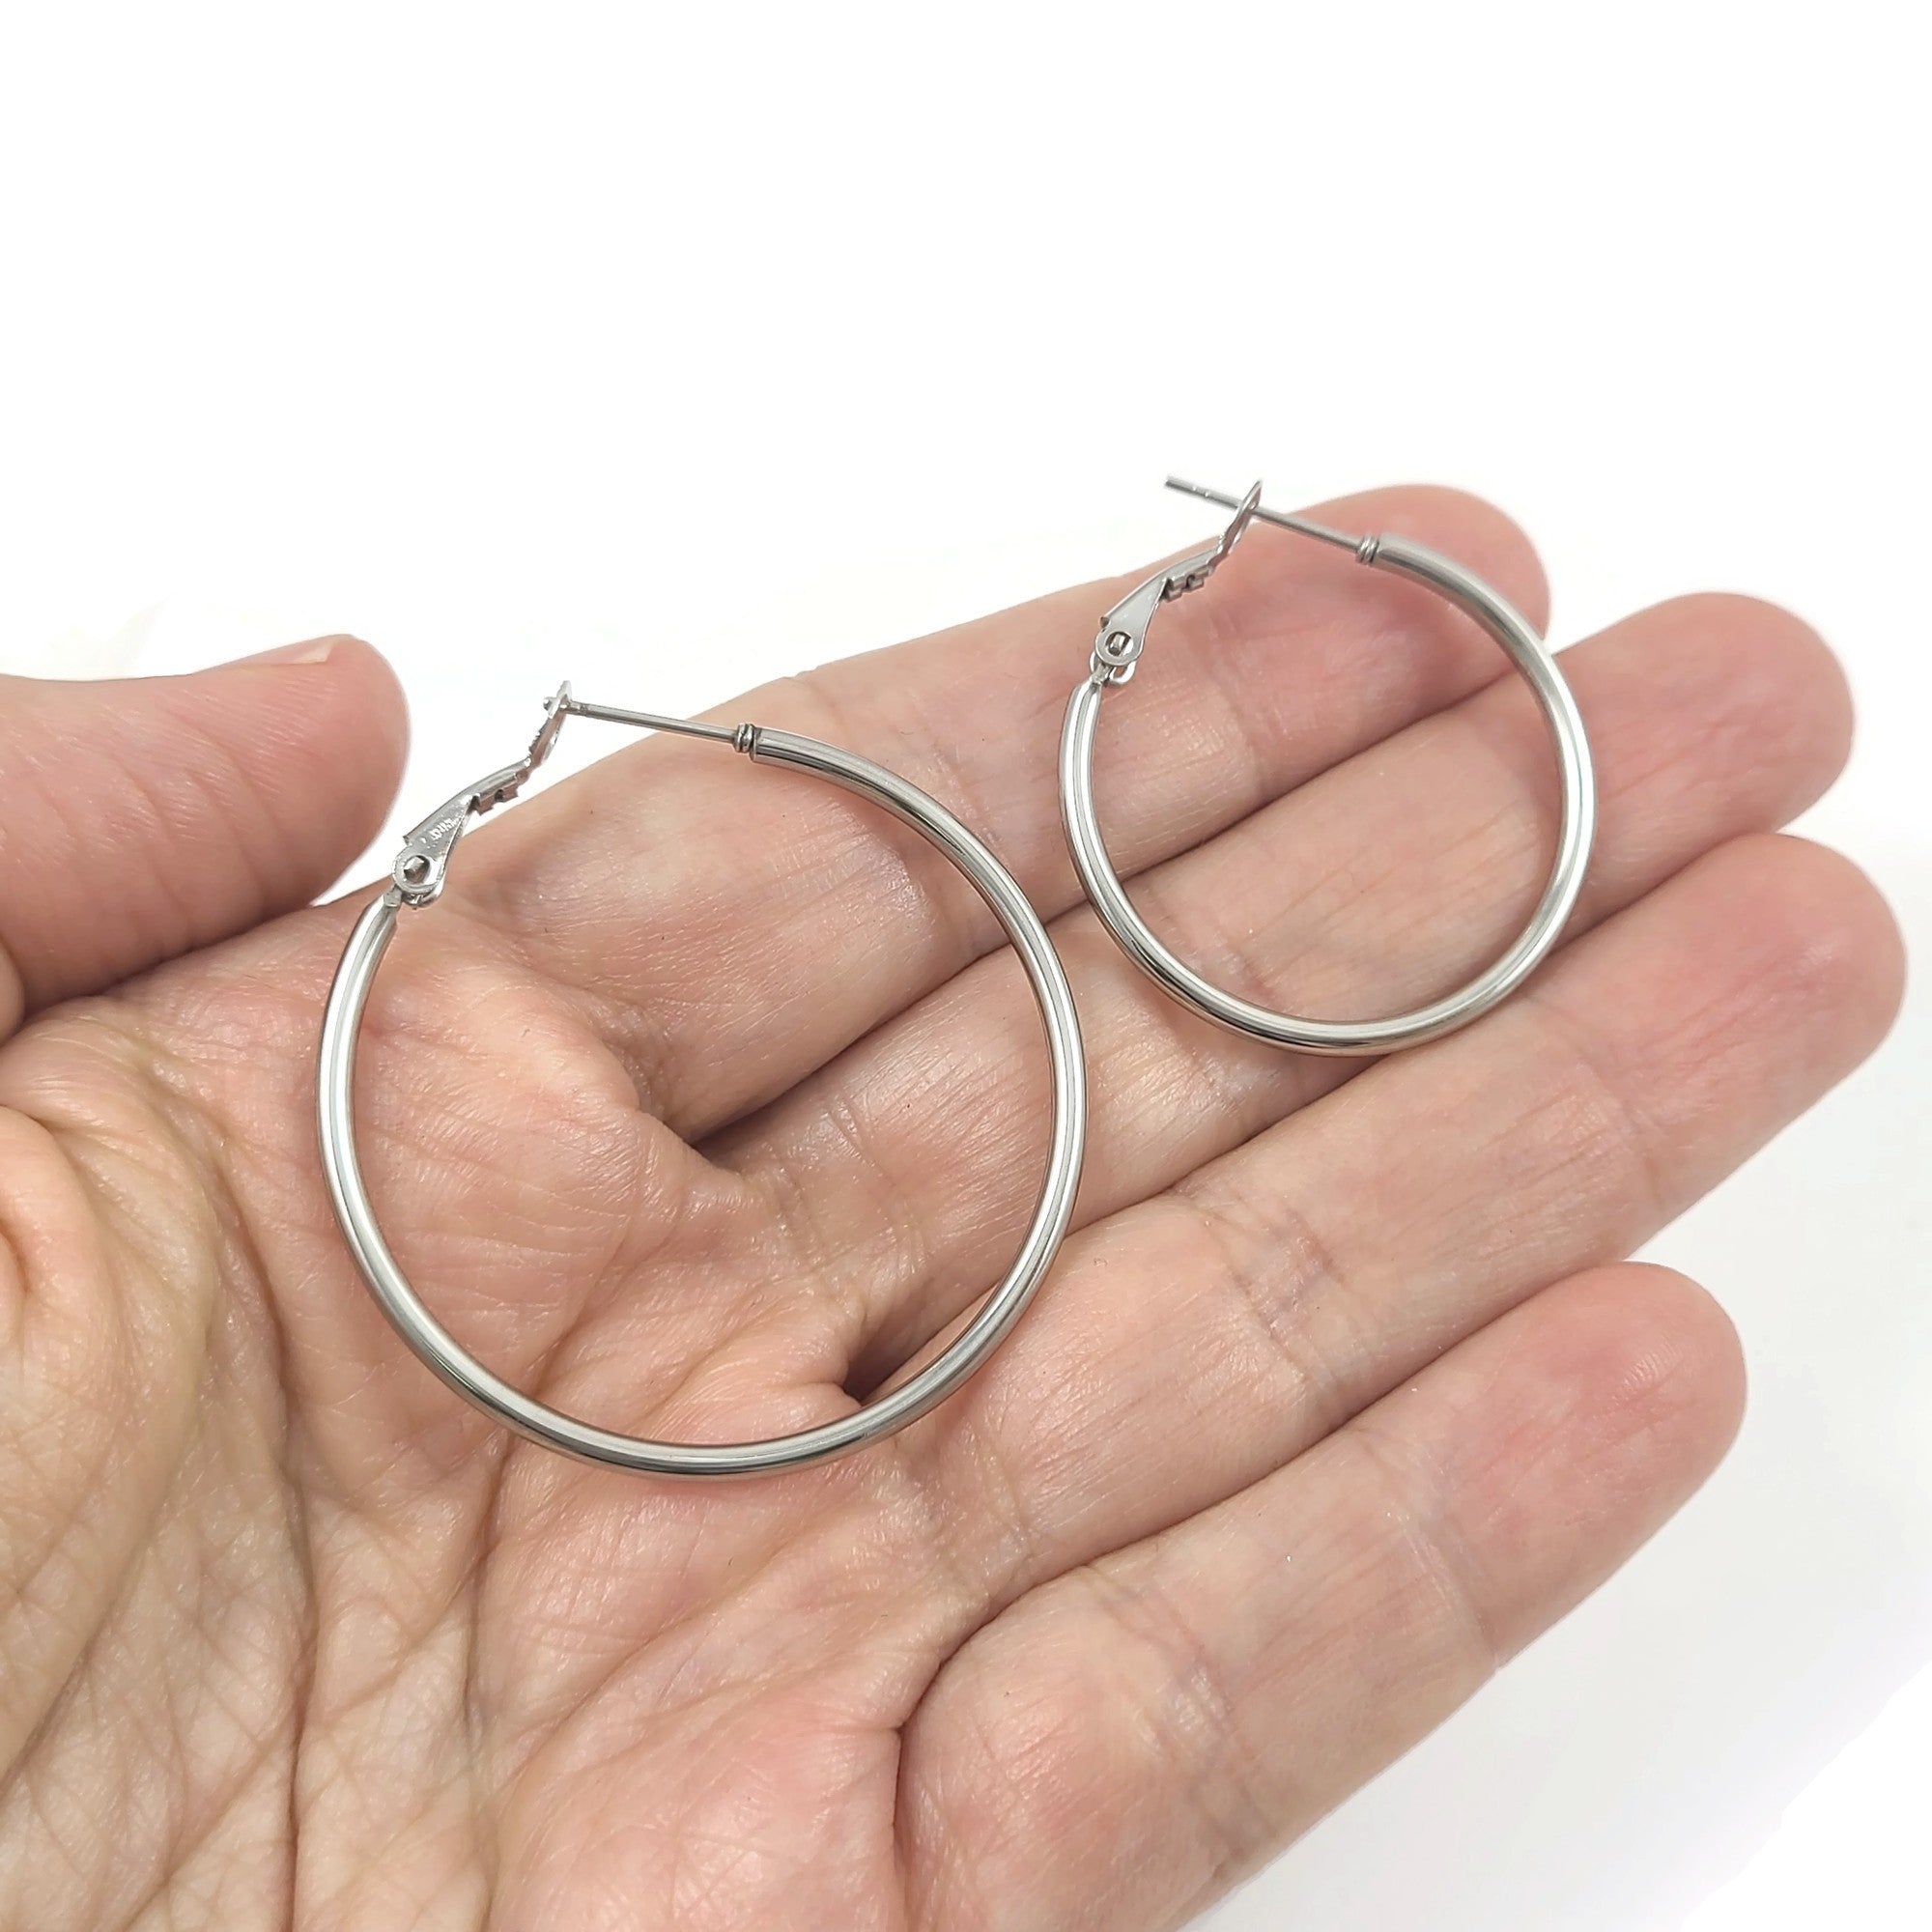 Stainless steel hoops - Nickel free, lead free and cadmium free earwire